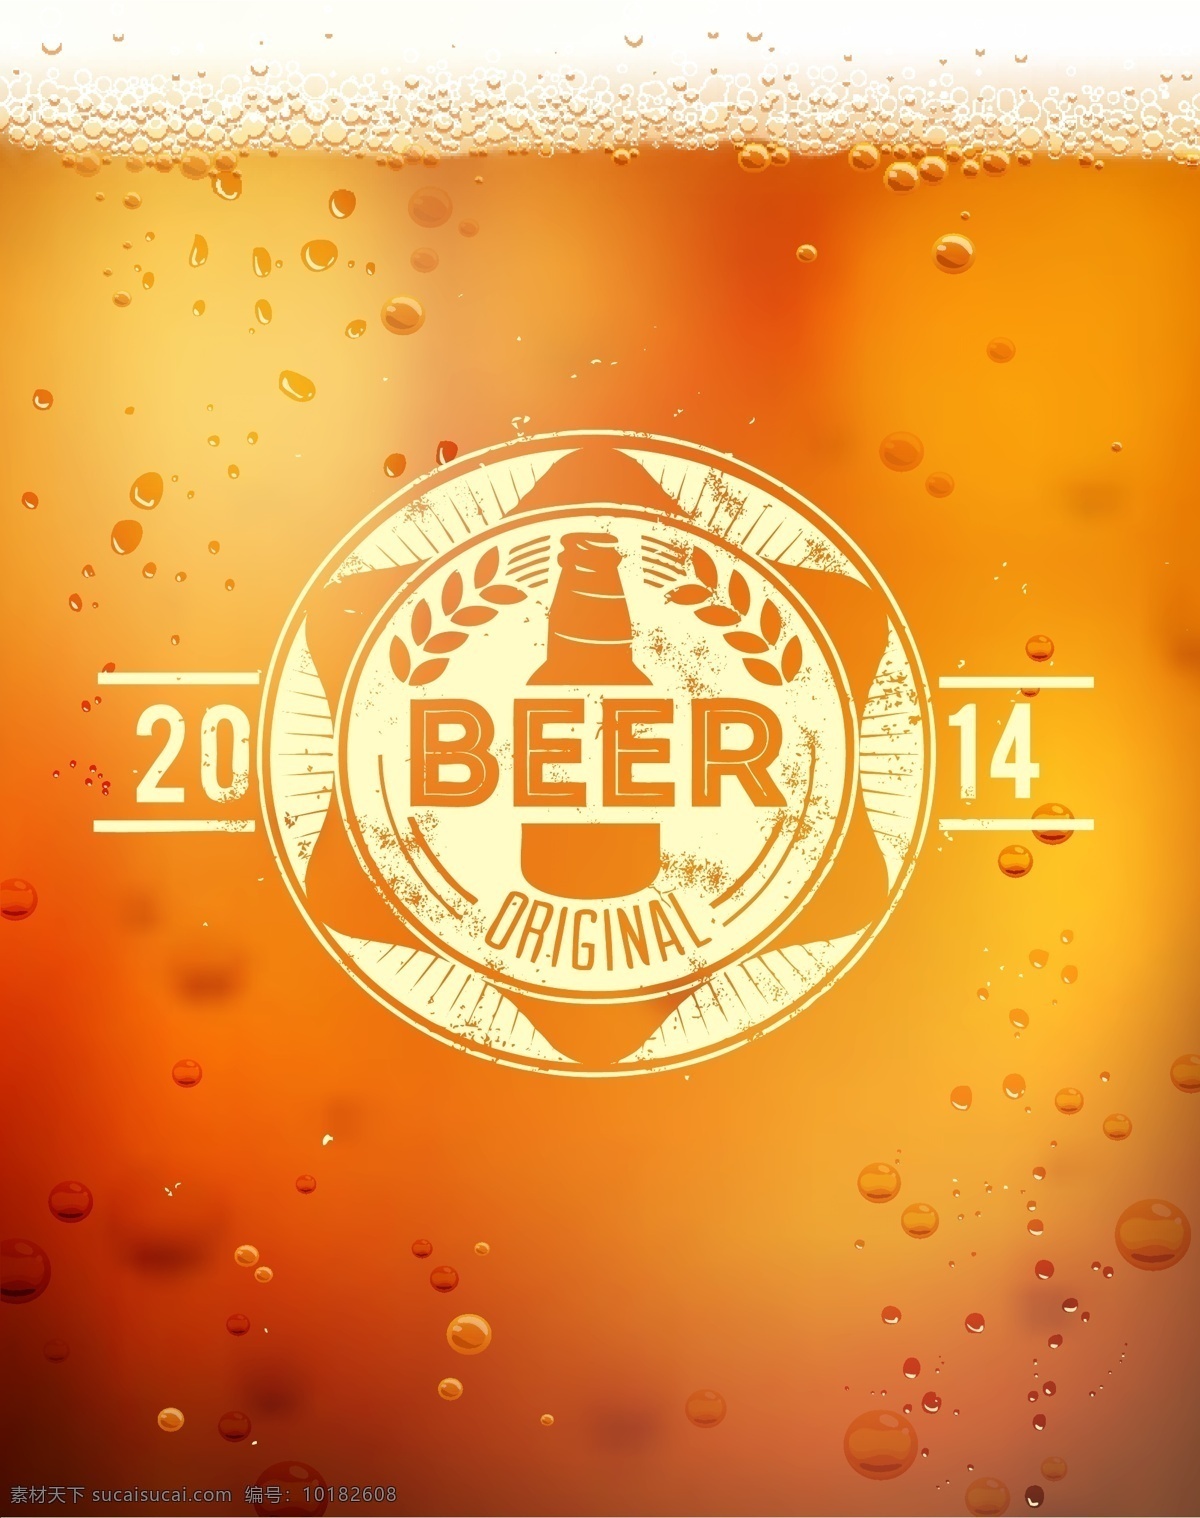 梦幻啤酒背景 梦幻 标志 啤酒 饮料 酒水 标志图标 矢量素材 橙色